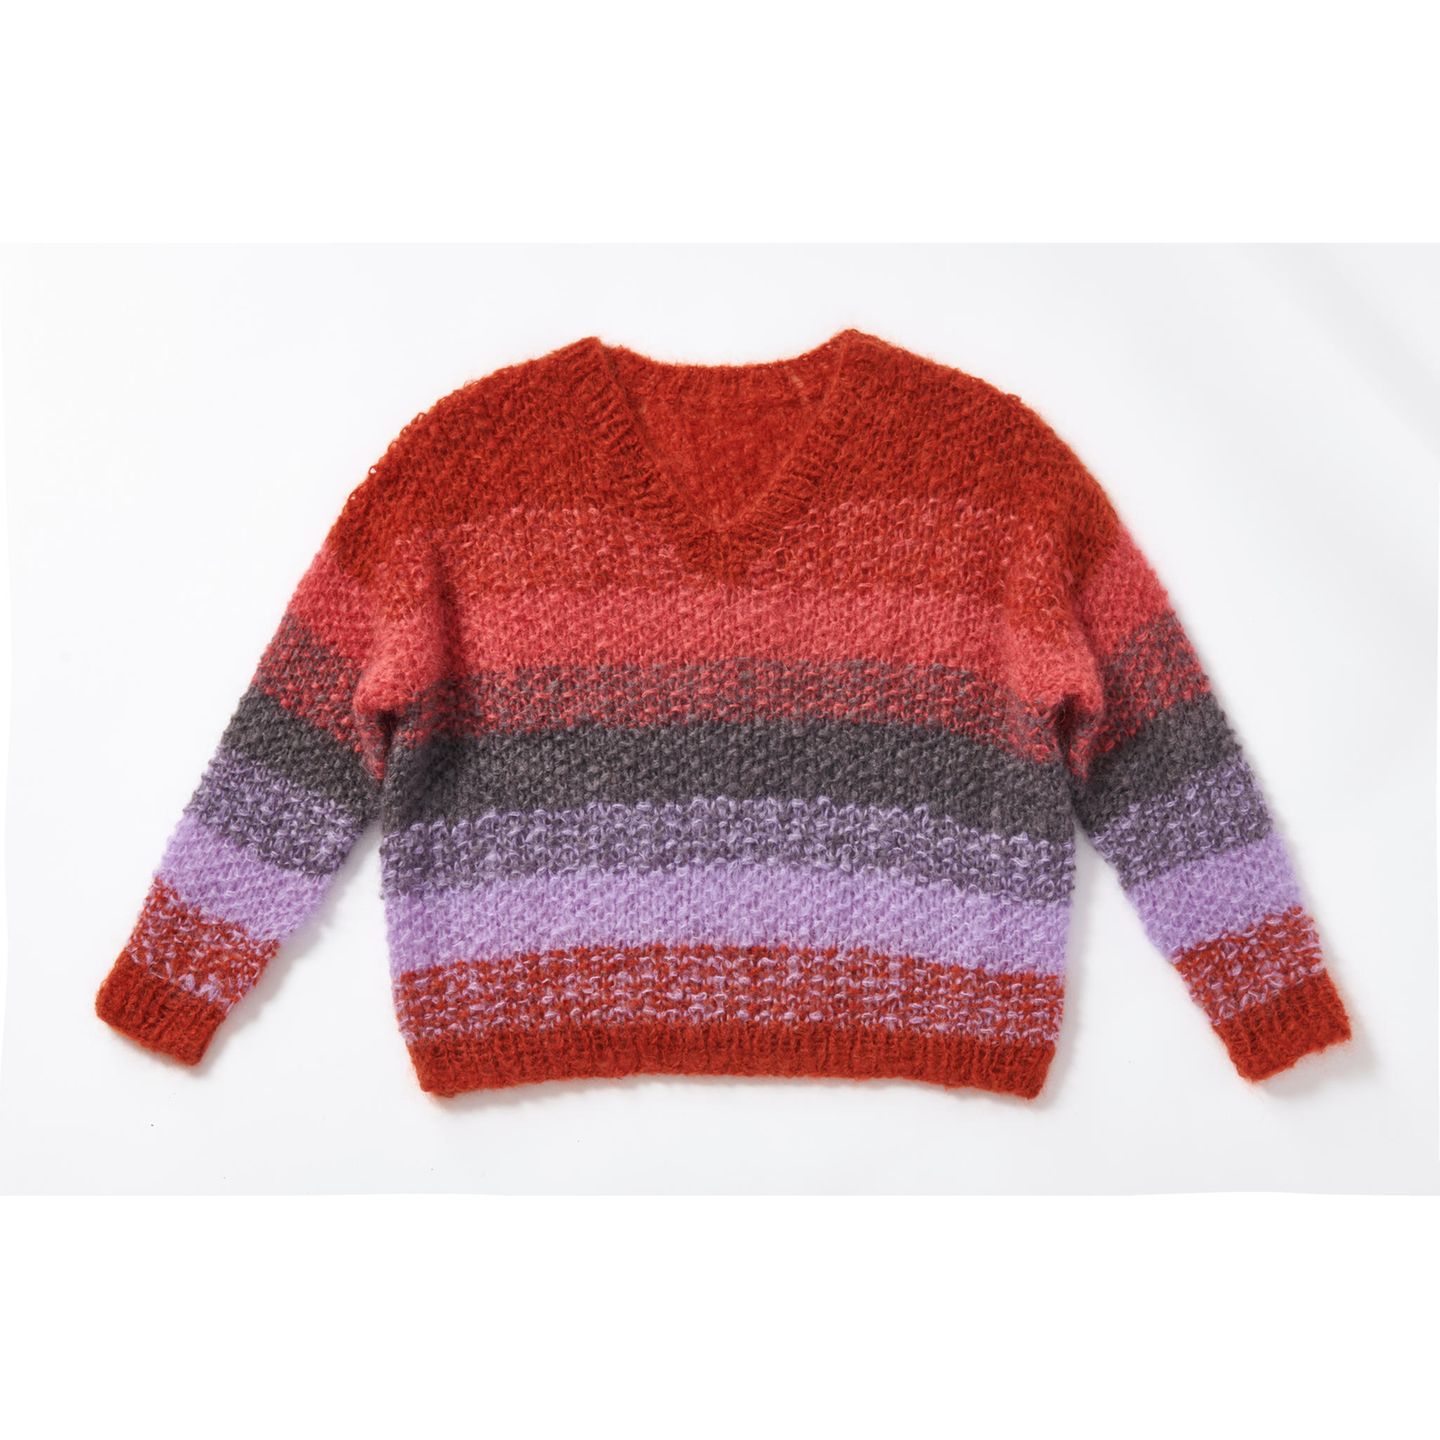 Pullover mit Farbverlauf stricken: bunter Pullover